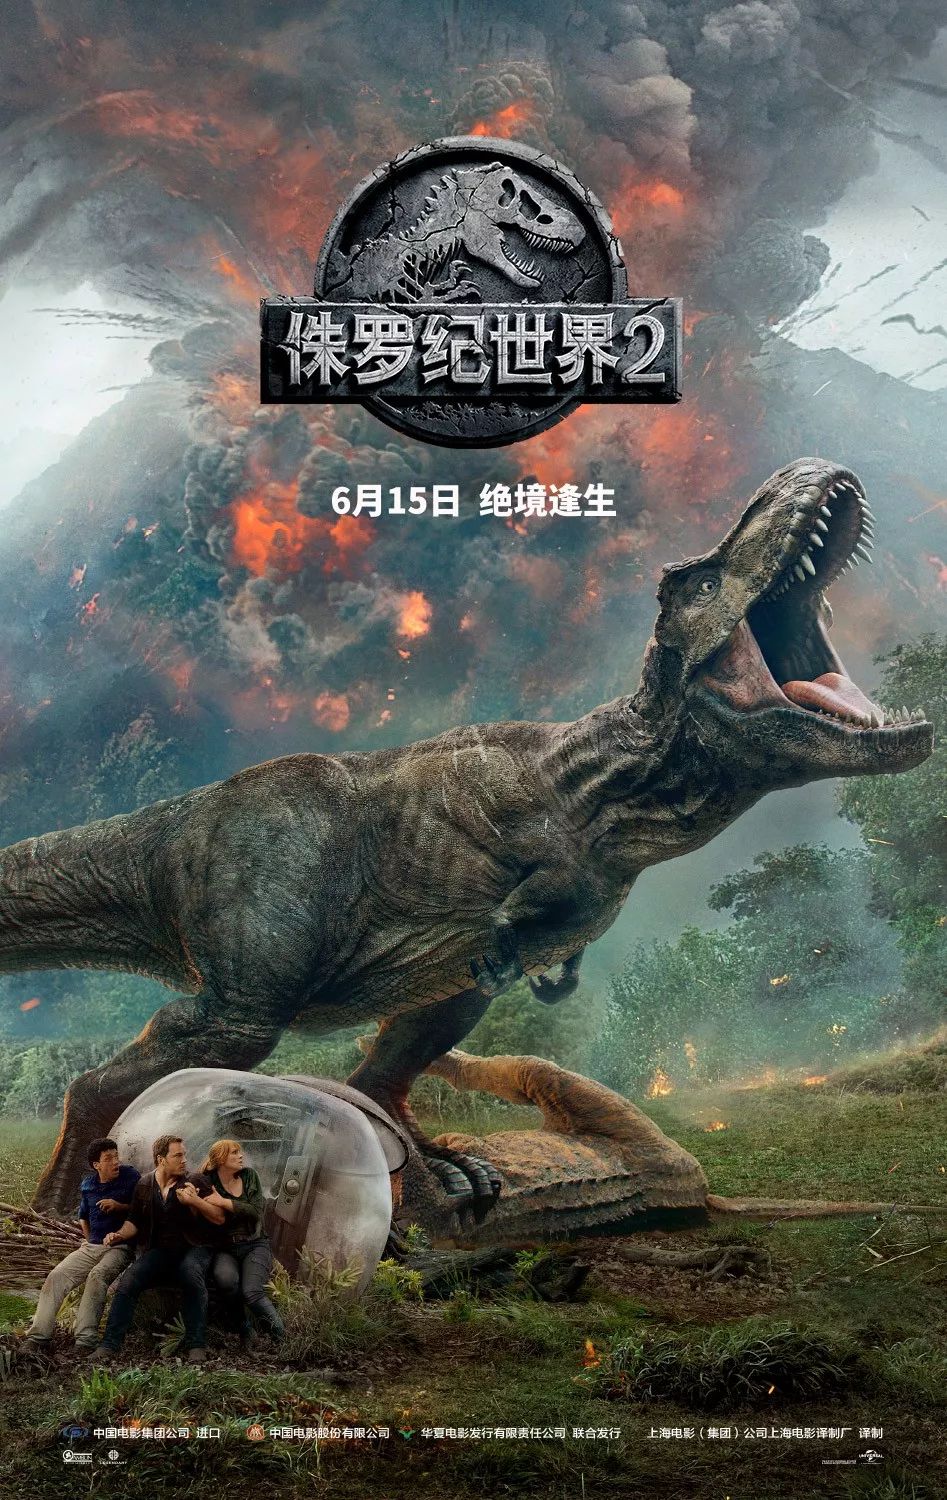 【侏罗纪世界2】 经典再现~一大波恐龙即将重返战场!